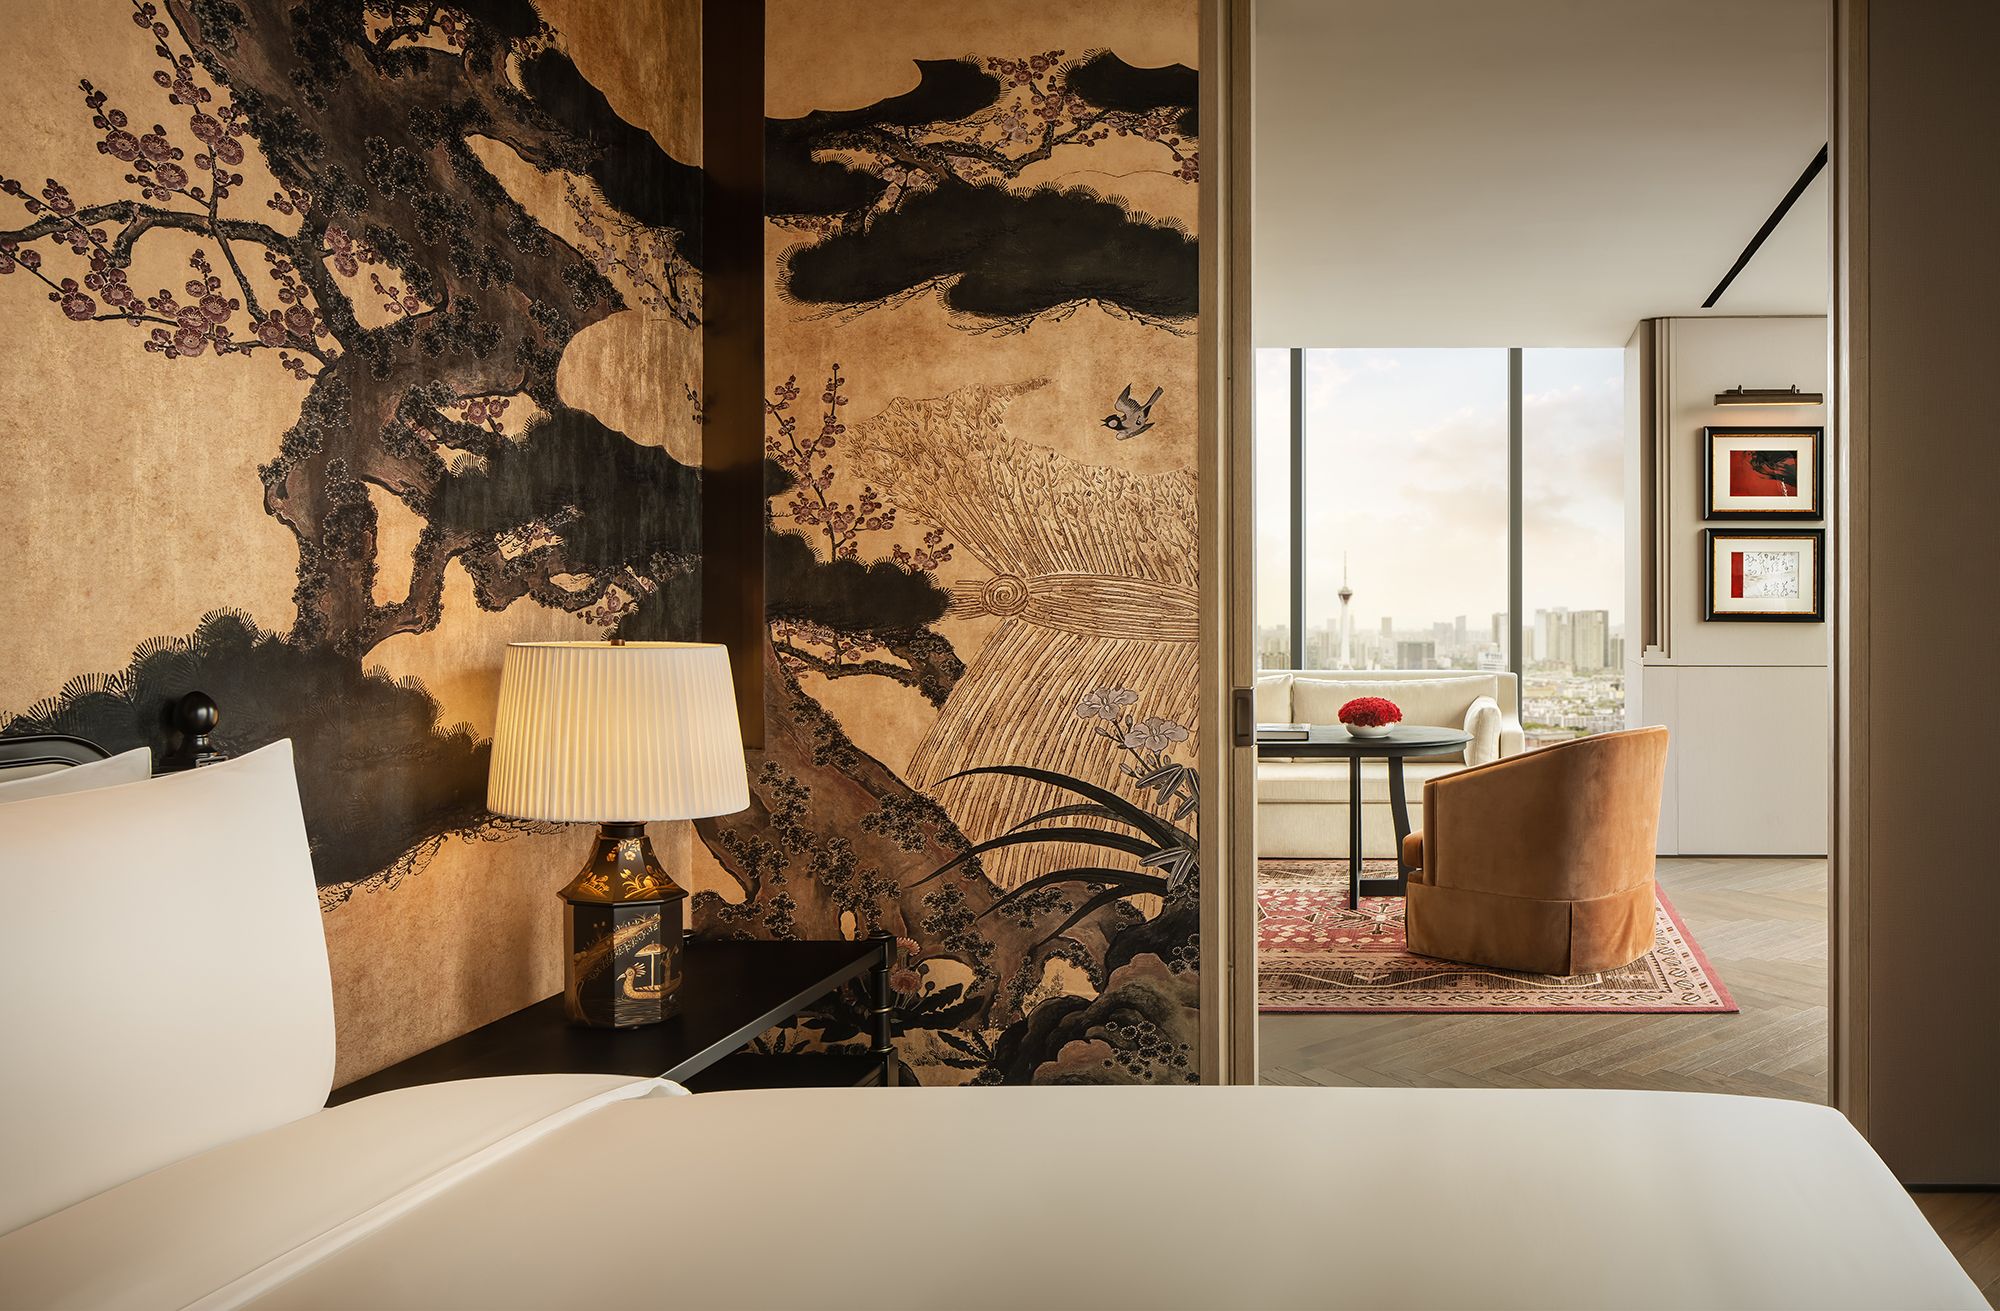 图片[9]|成都木棉大酒店|ART-Arrakis | 建筑室内设计的创新与灵感